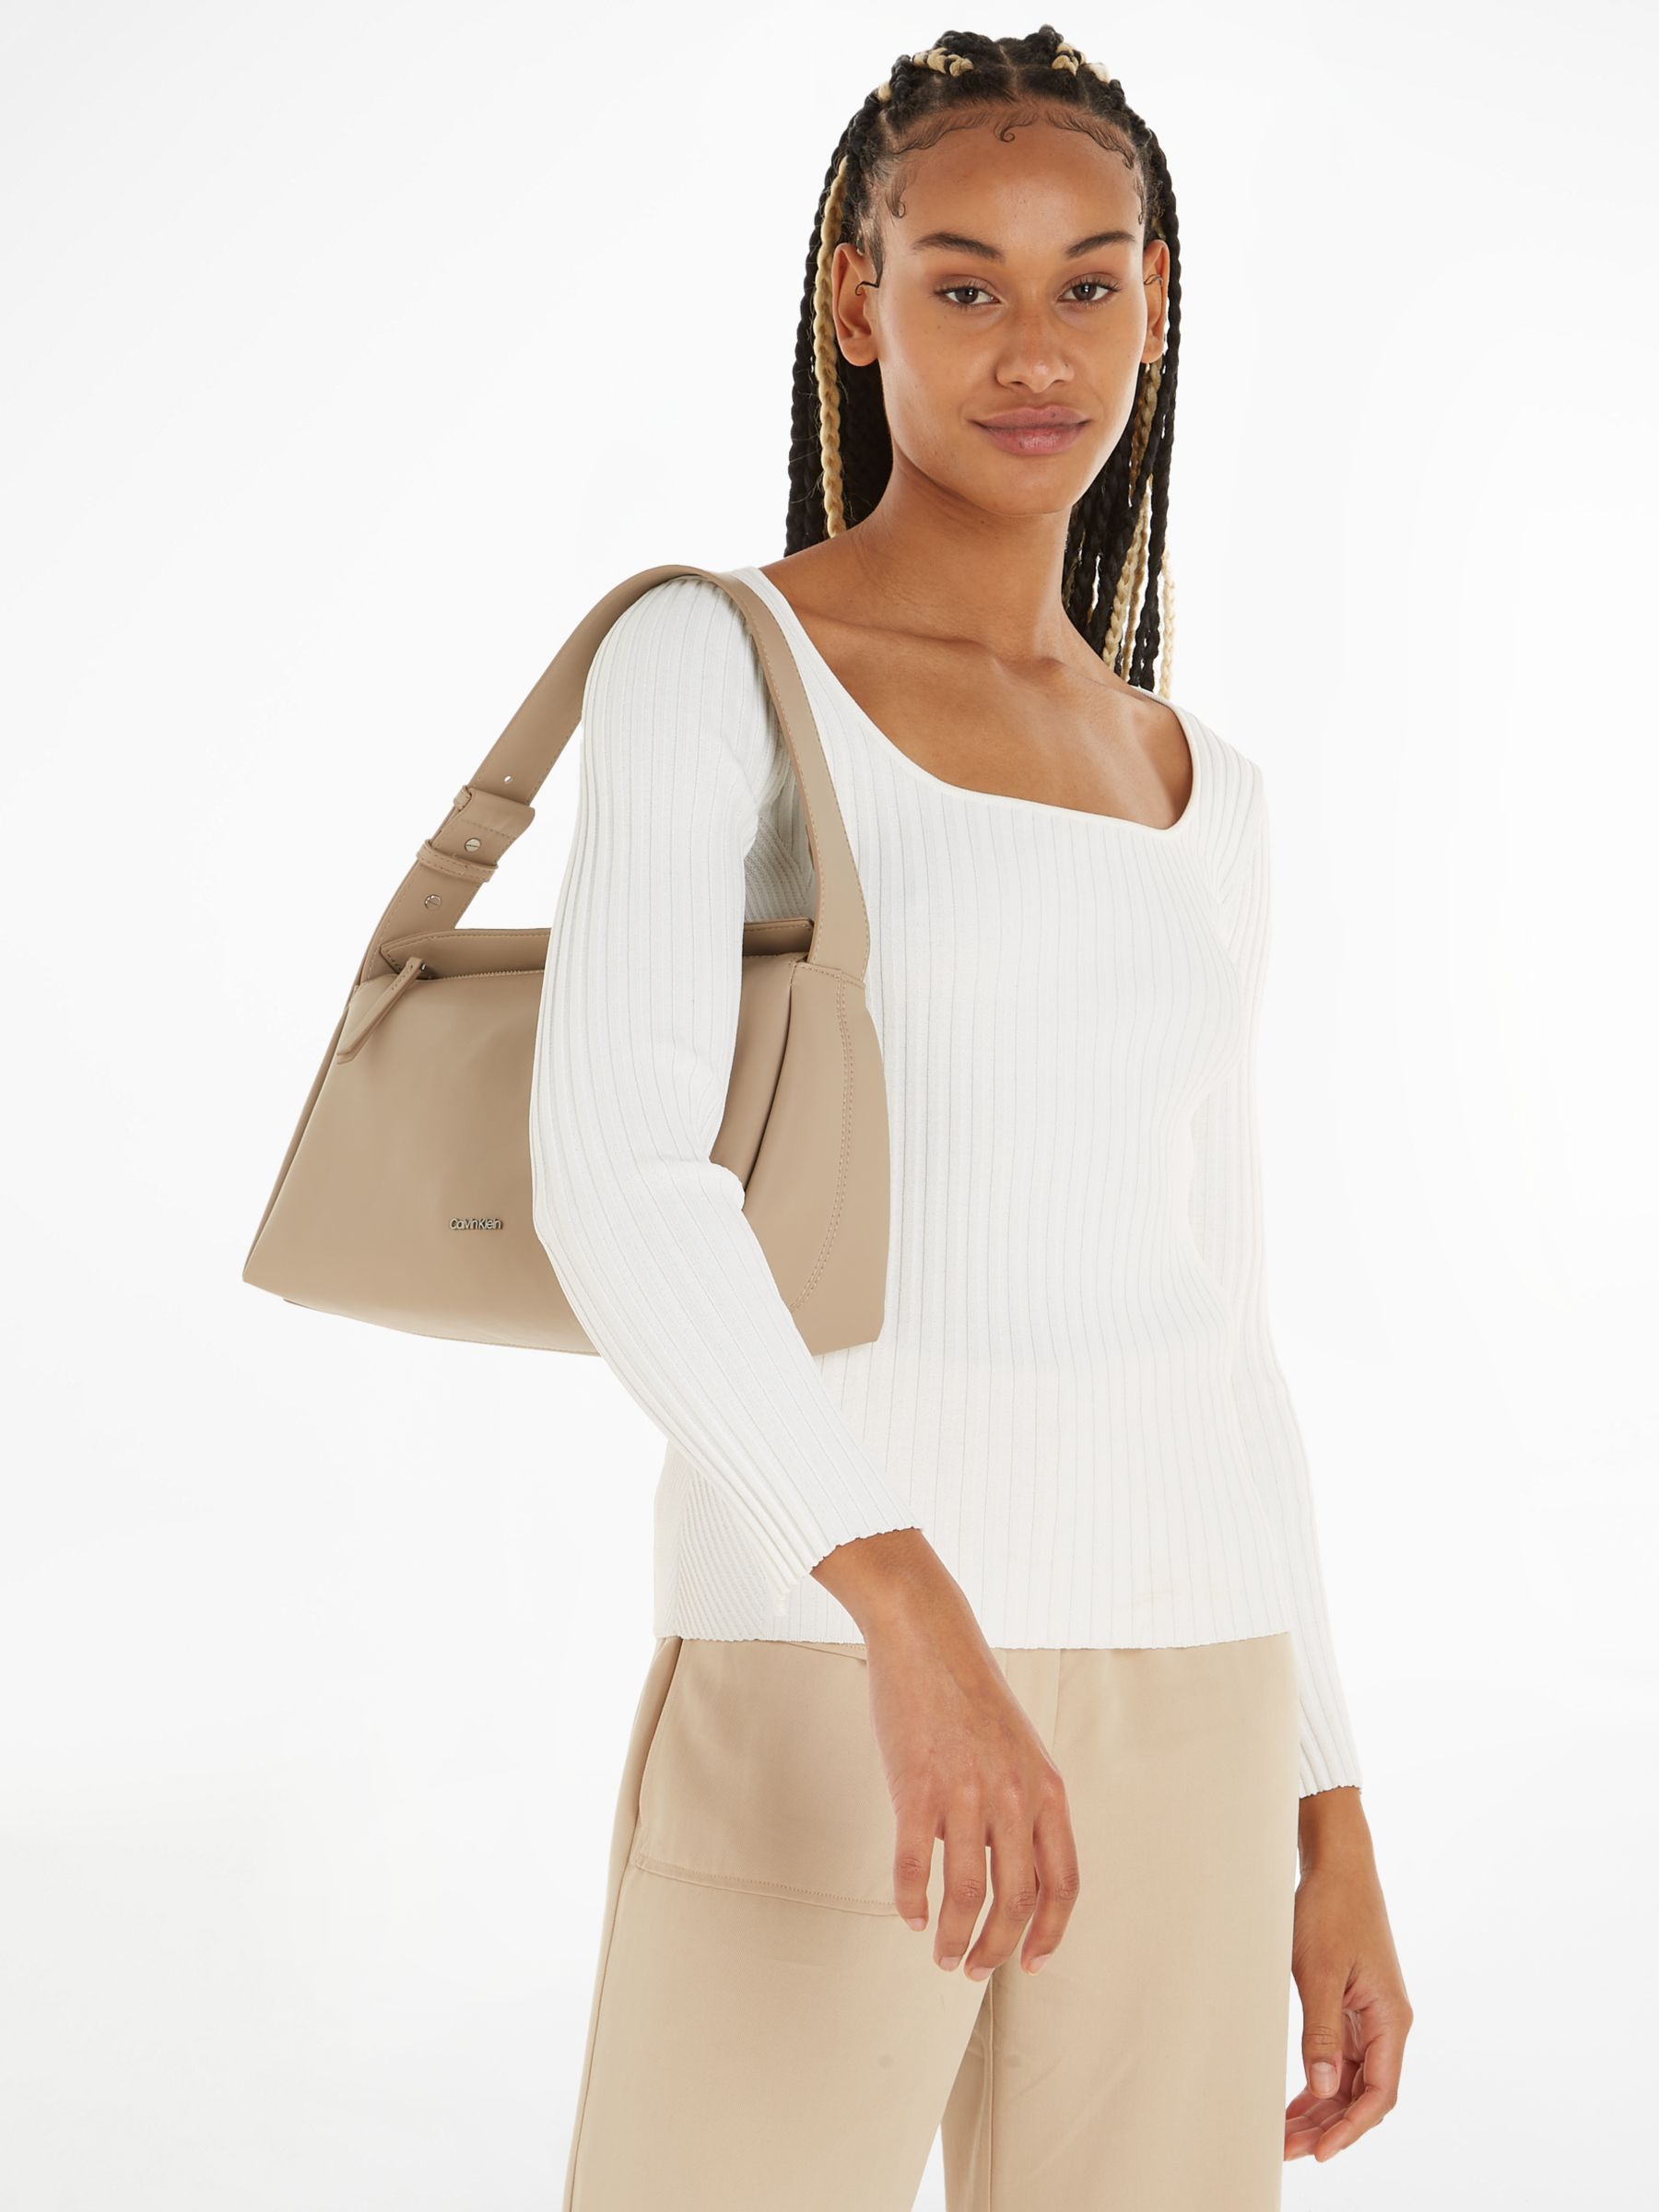 Calvin Klein Beige Polyester Women's Handbag